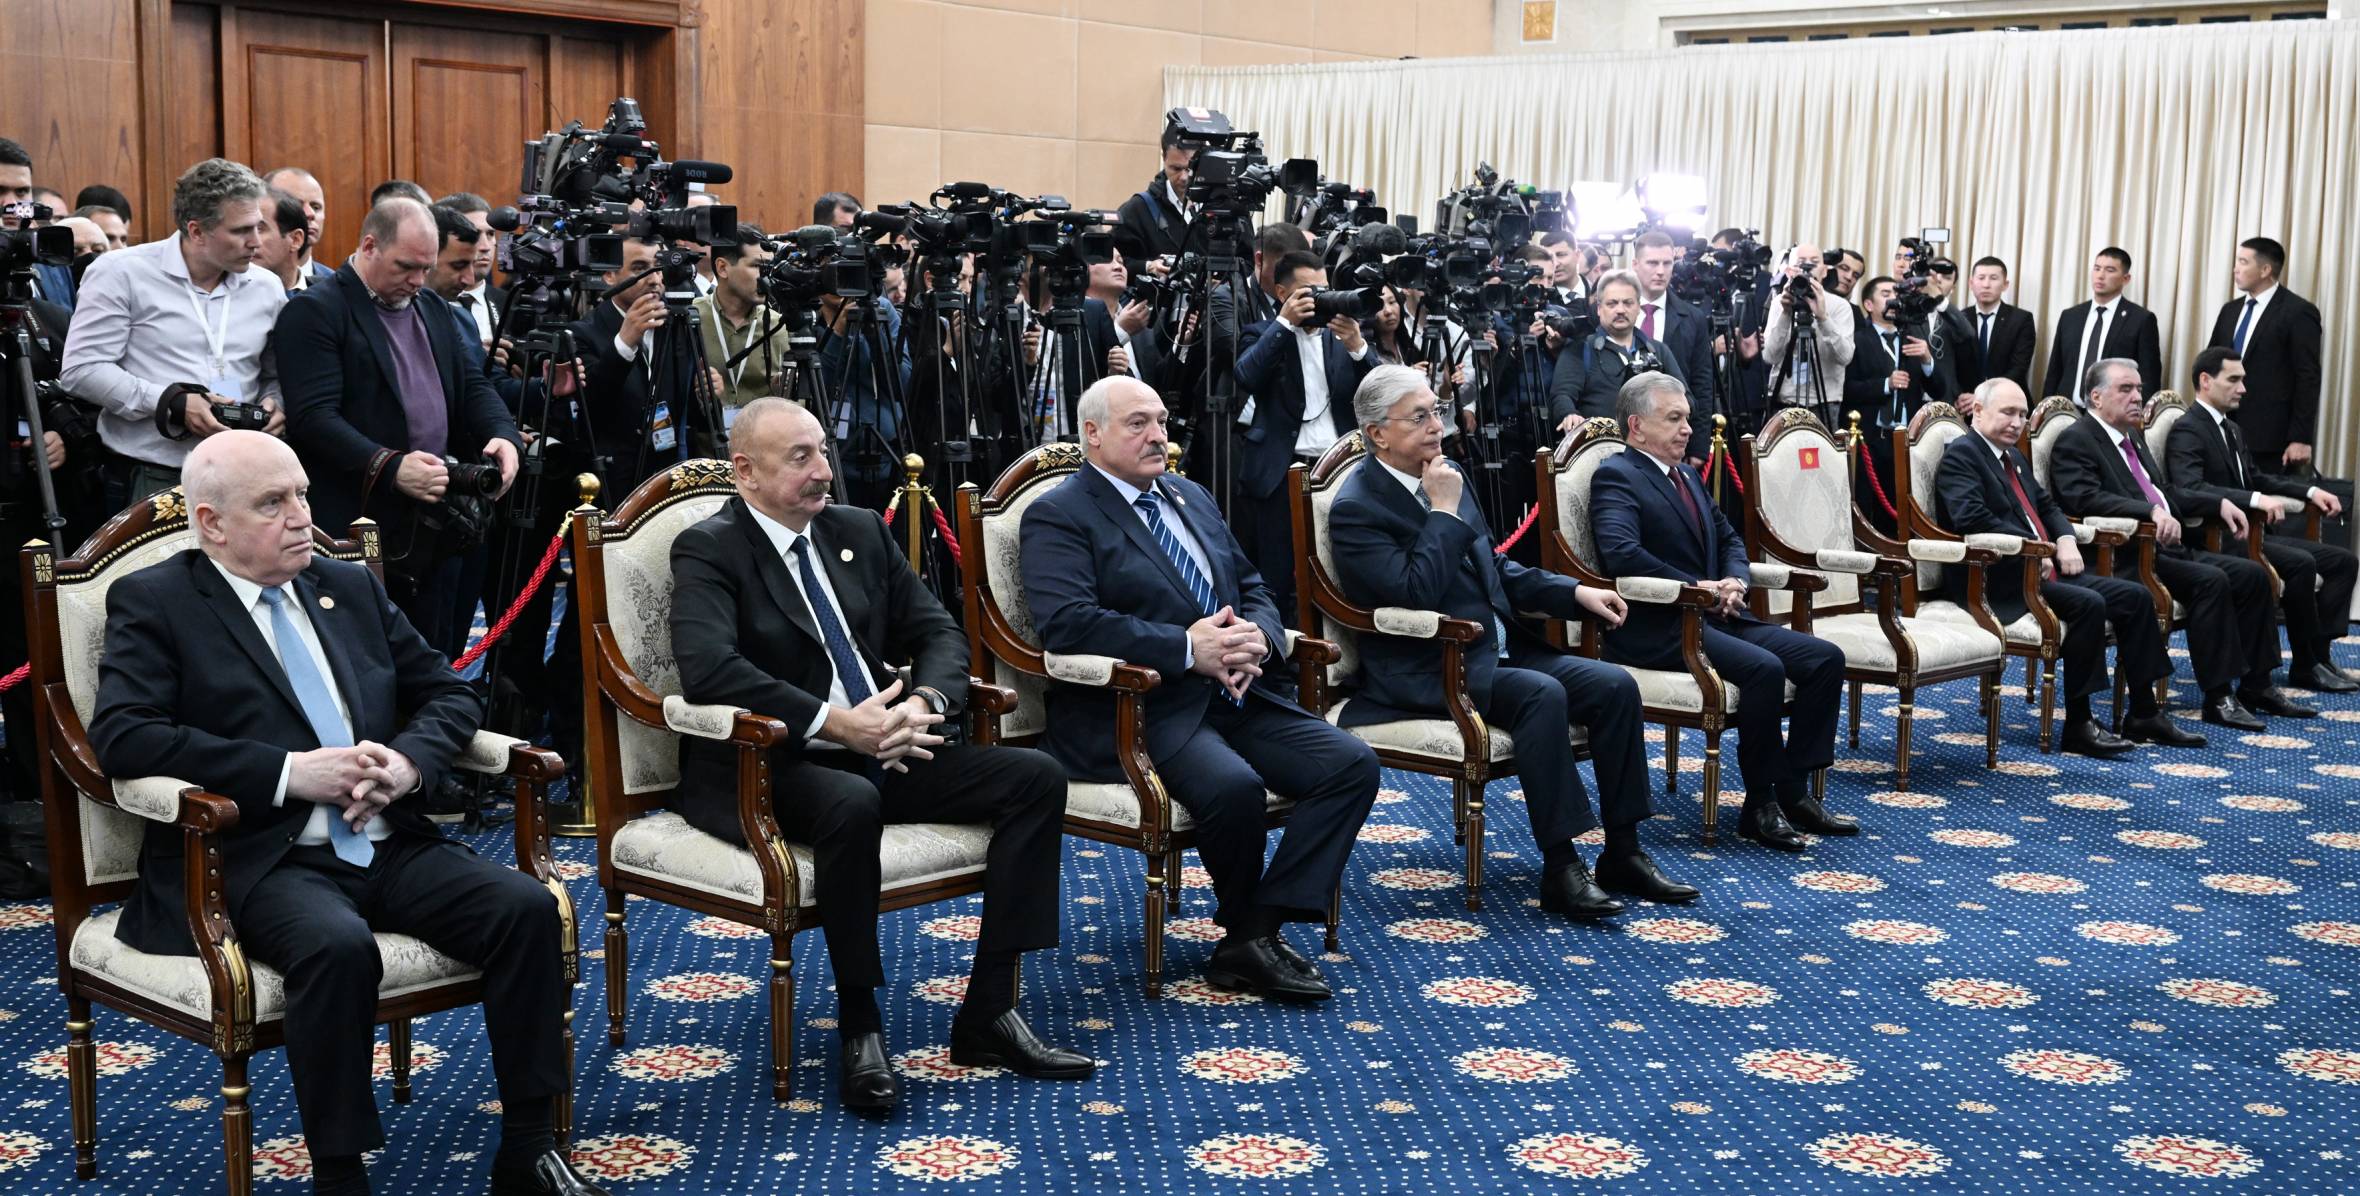 Ильхам Алиев принял участие в церемонии награждения Президента Шавката Мирзиёева в Бишкеке